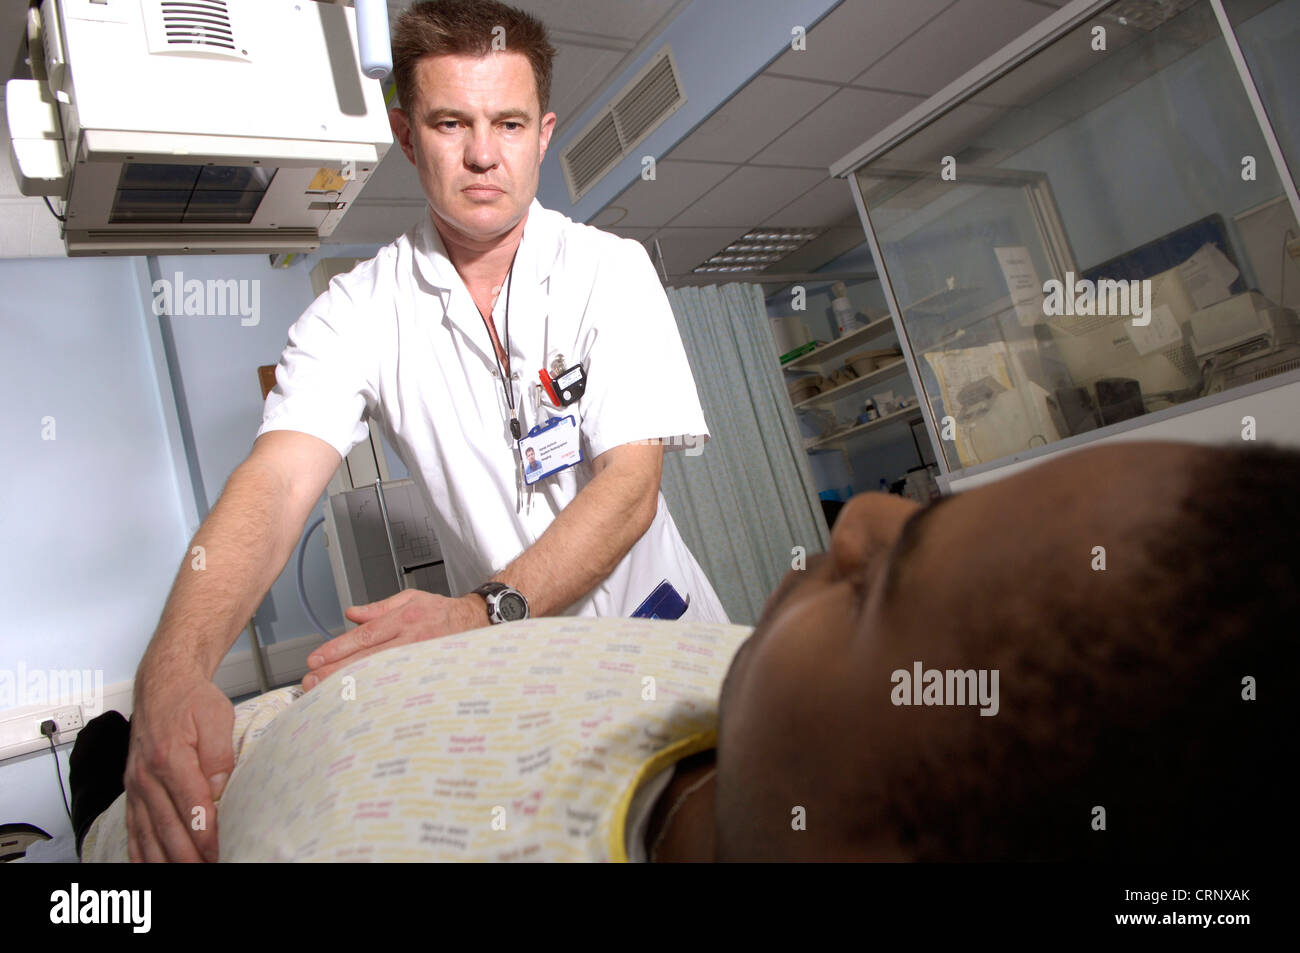 Ein Radiologe, Vorbereitung eines Patienten auf eine Röntgenaufnahme unter der Maschine. Stockfoto